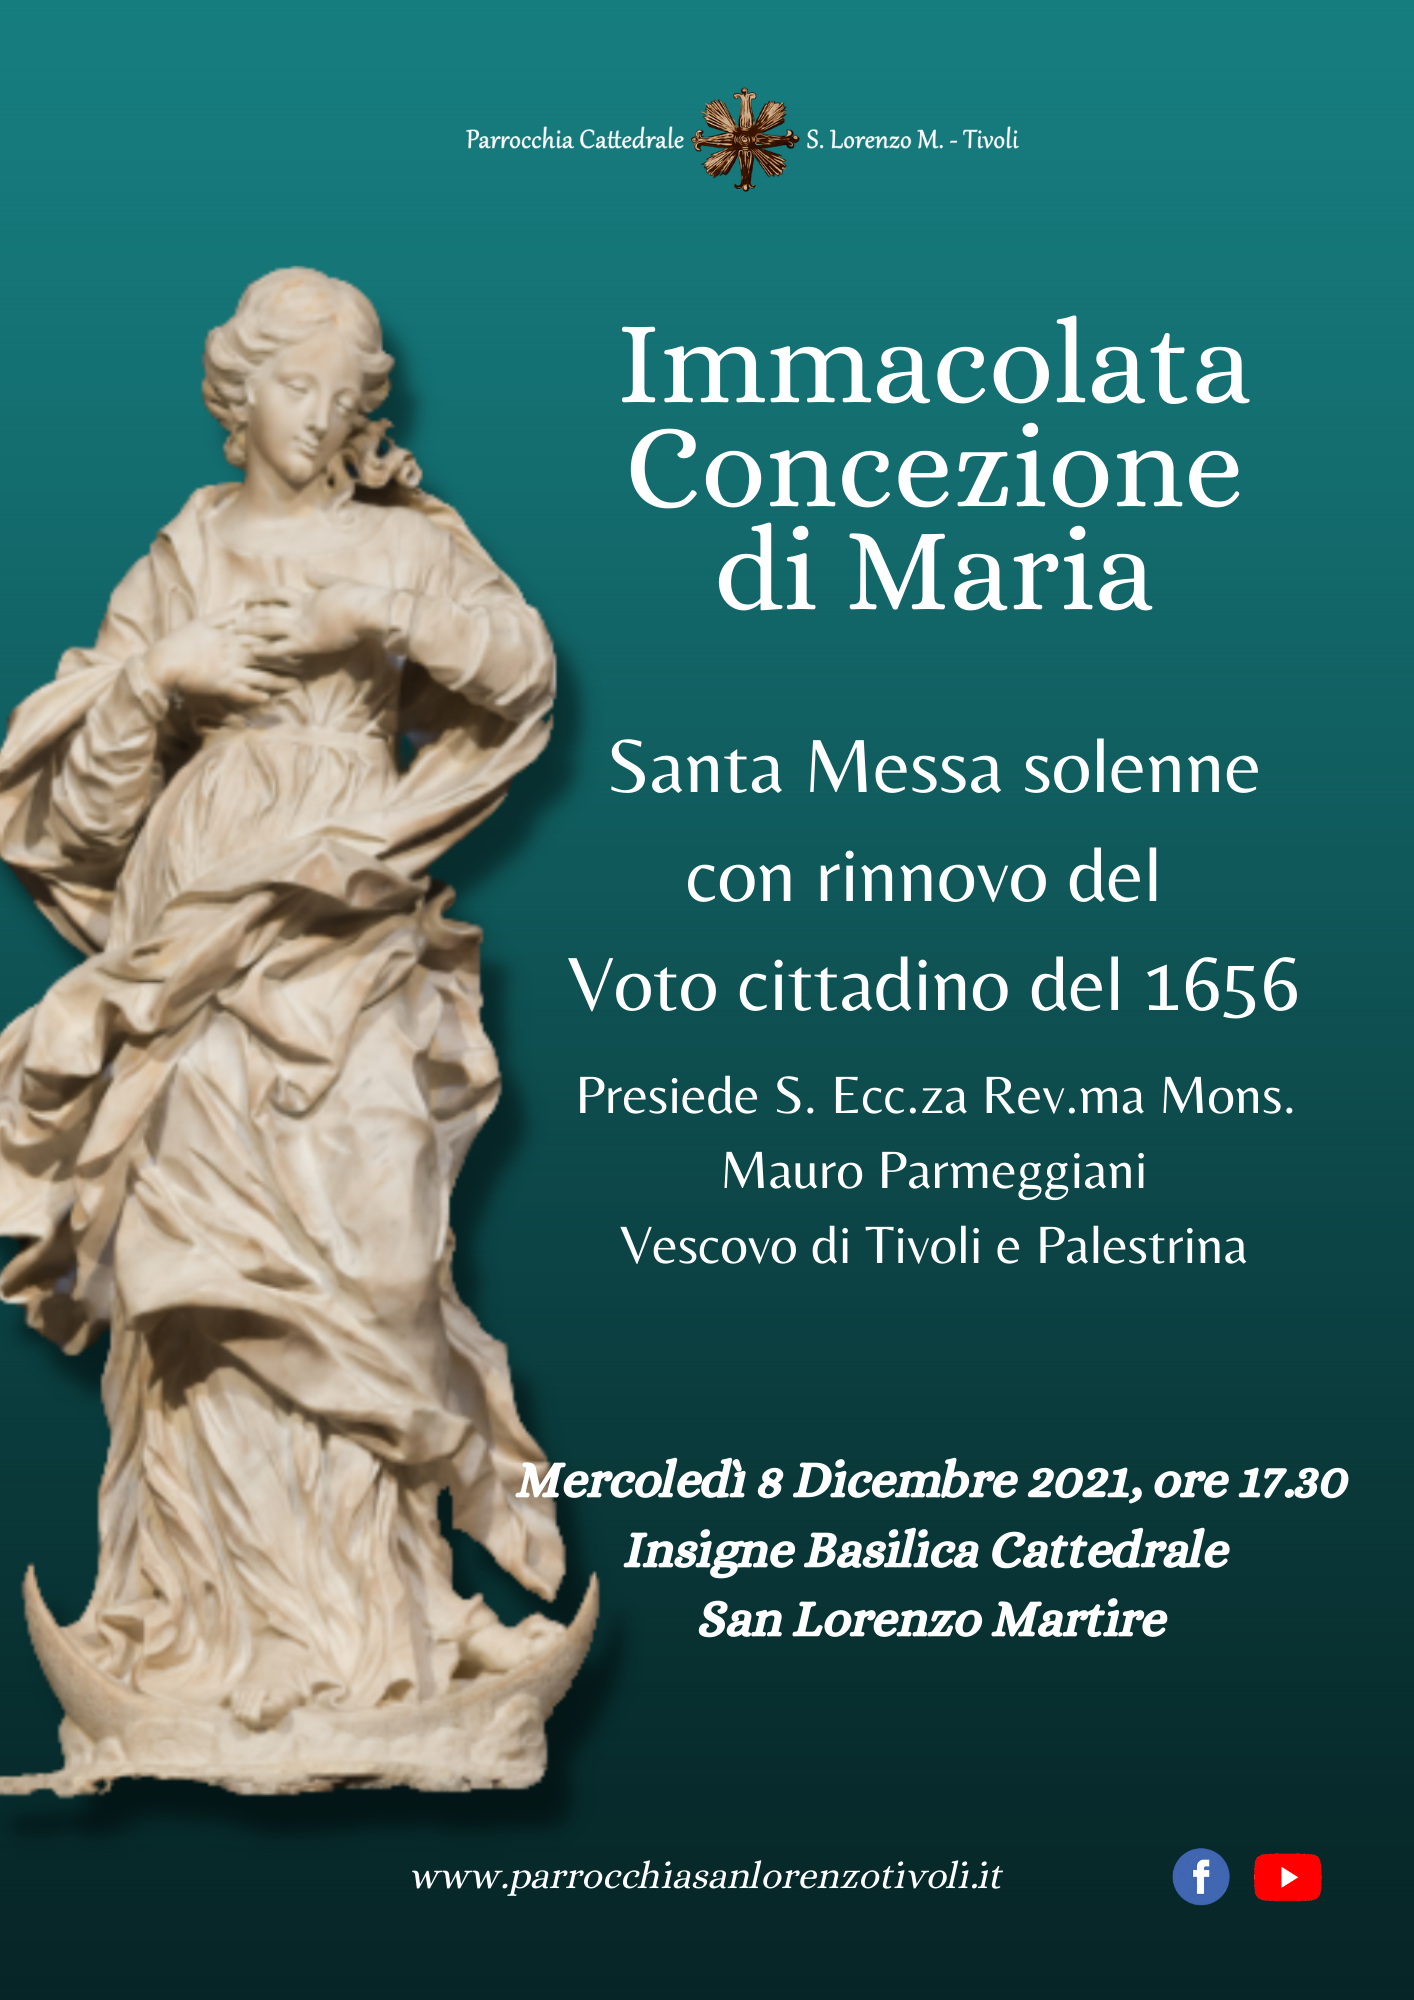 Festa dell’Immacolata in Duomo l’8 dicembre 2021